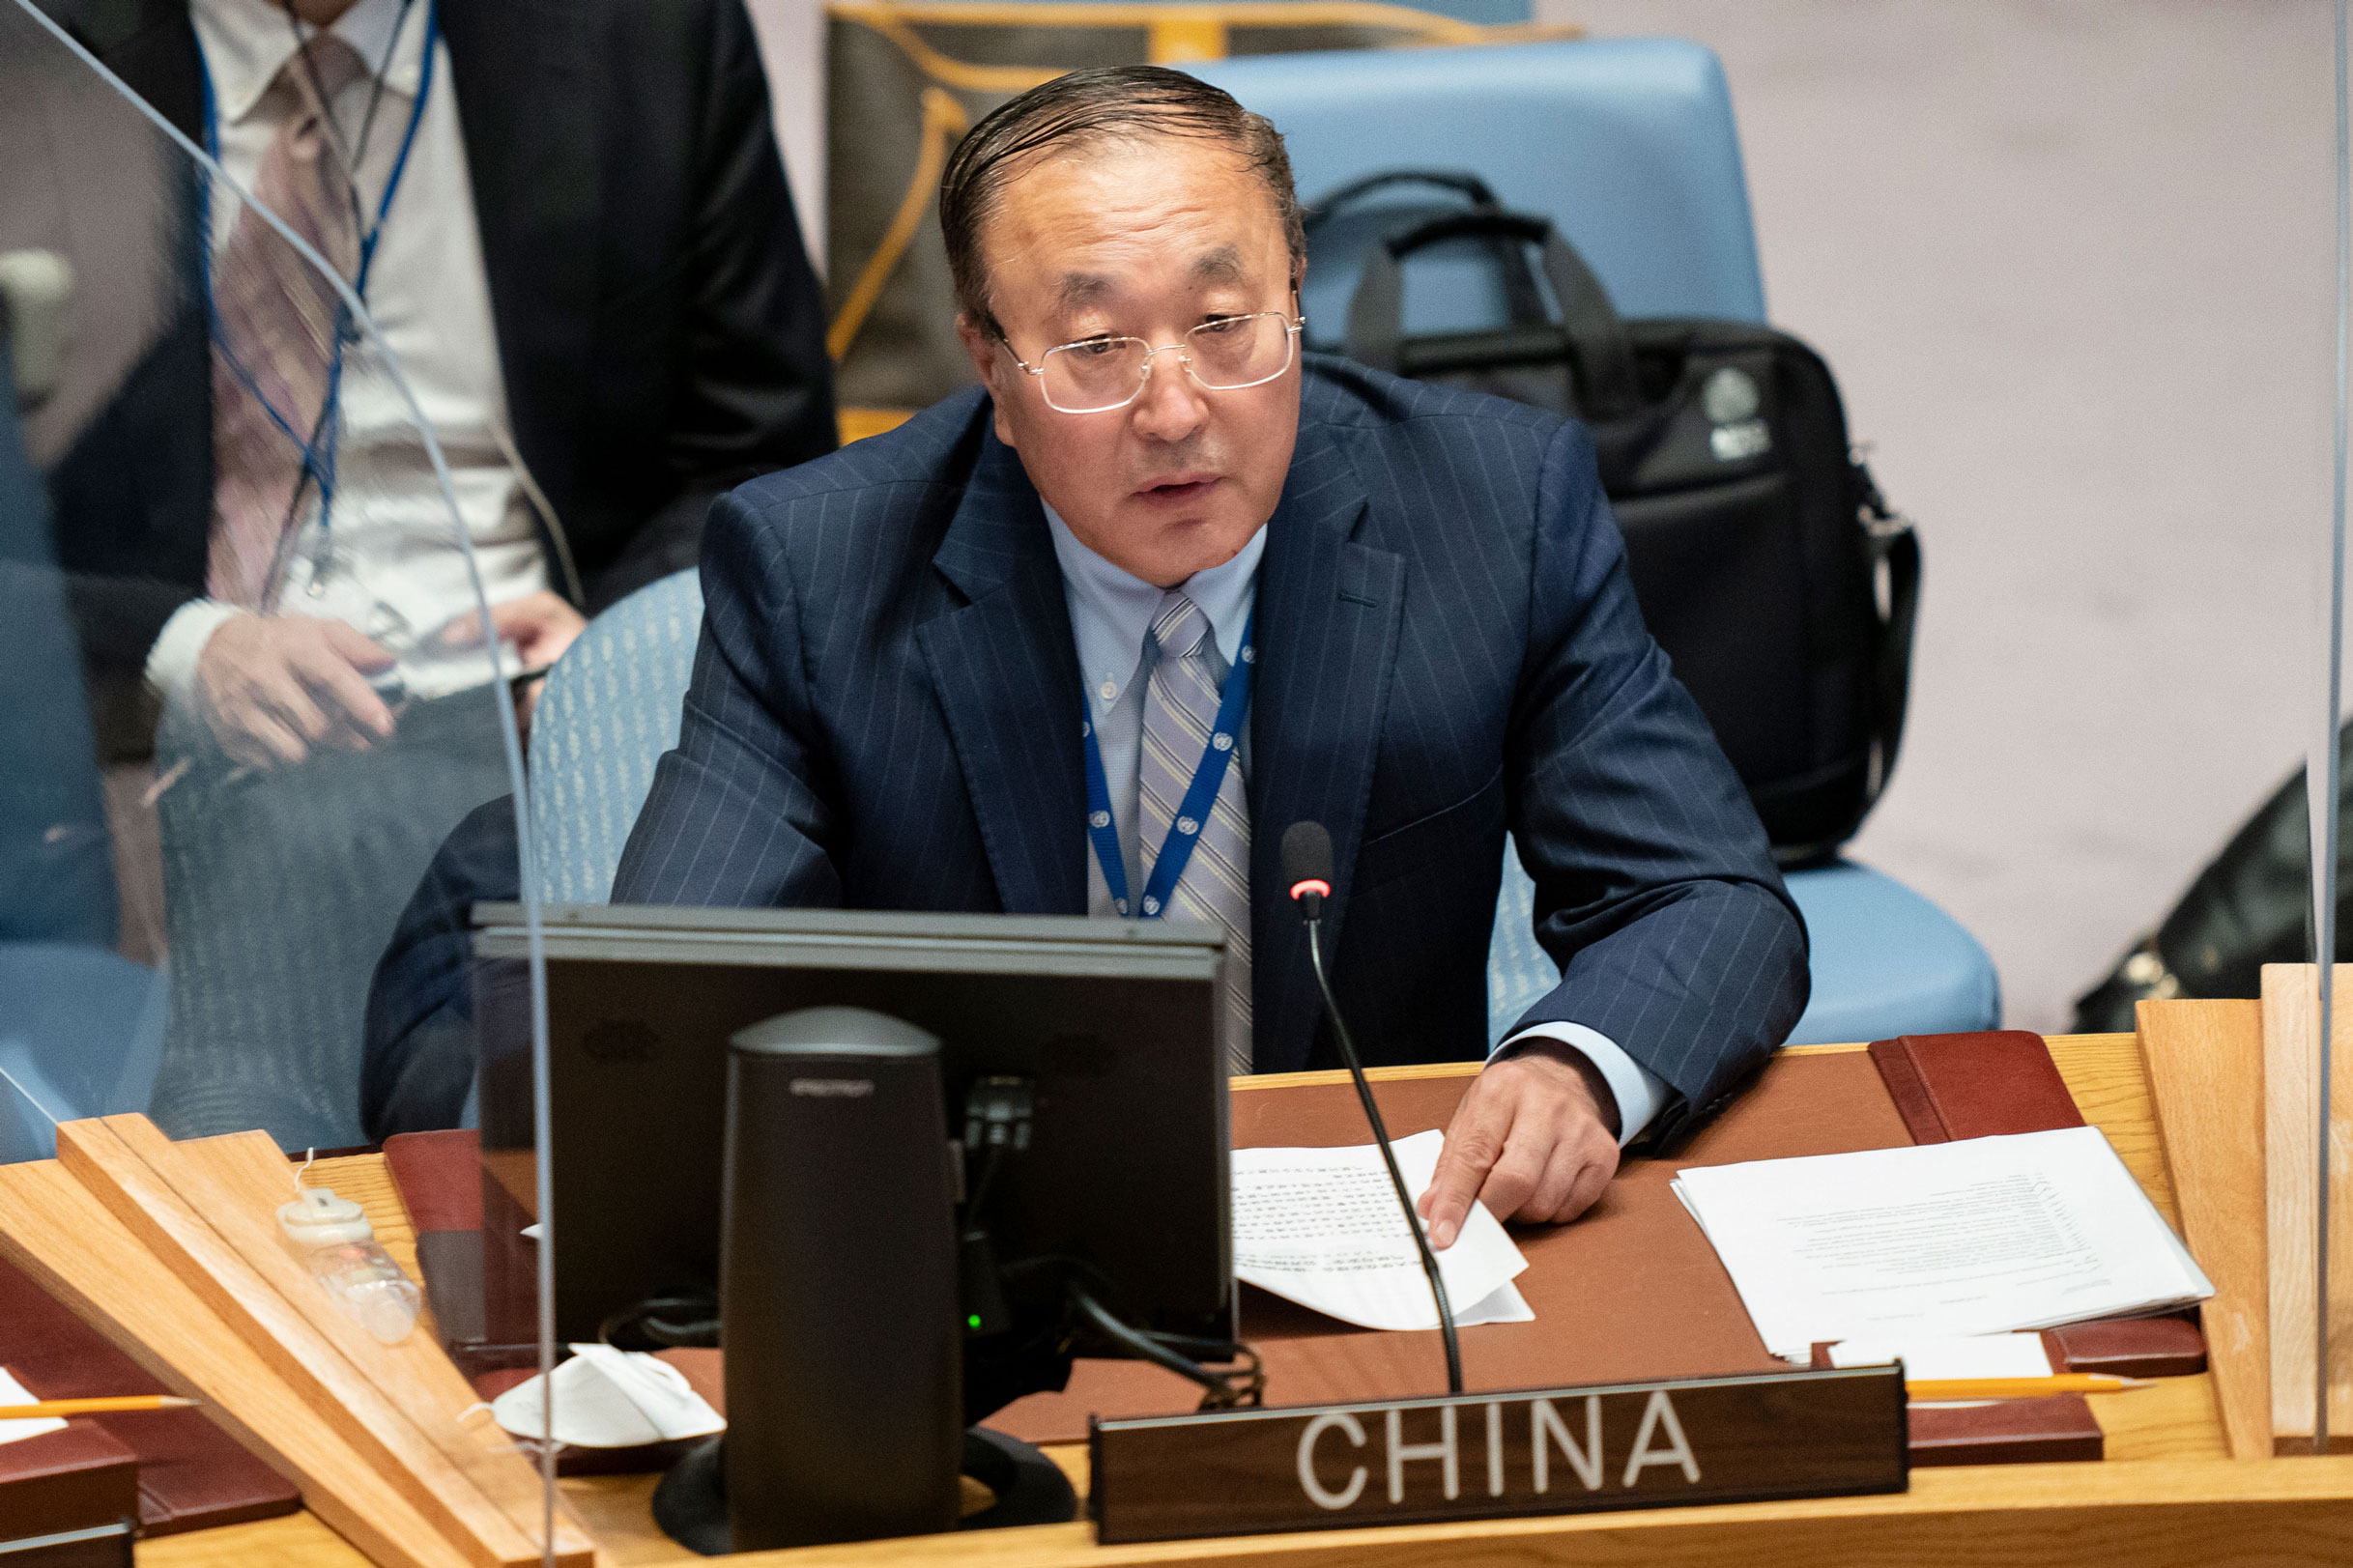 Zhang Jun, representante permanente de China ante las Naciones Unidas, habla durante una reunión del Consejo de Seguridad de las Naciones Unidas el 23 de septiembre de 2021. (John Minchillo/Pool/AP)